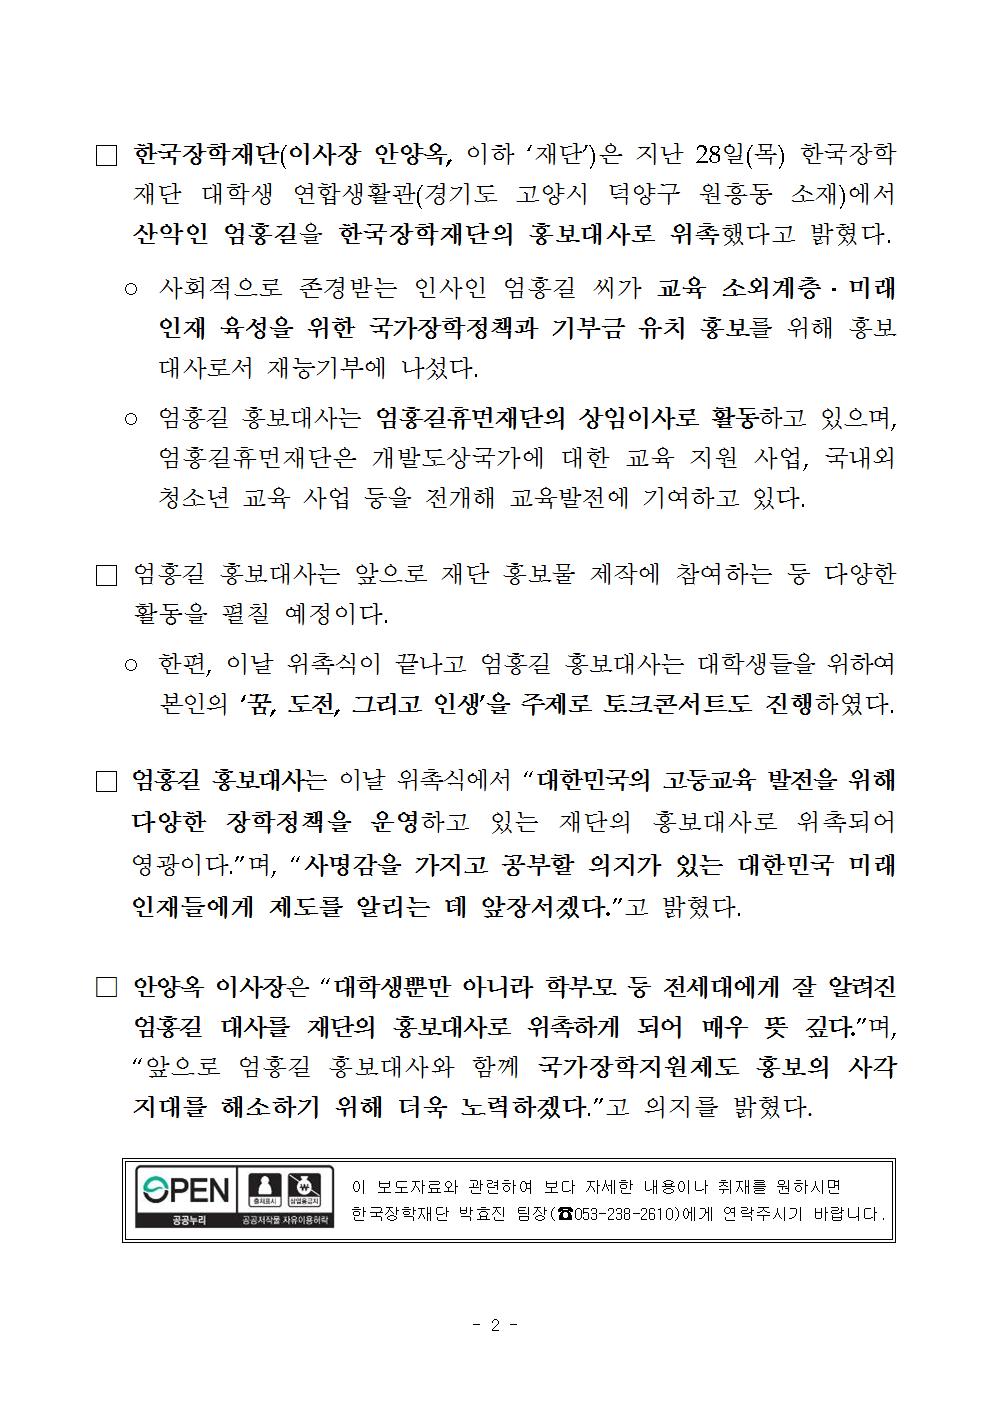 09-29(금)[보도자료] 엄홍길, 한국장학재단 홍보대사 위촉002.jpg